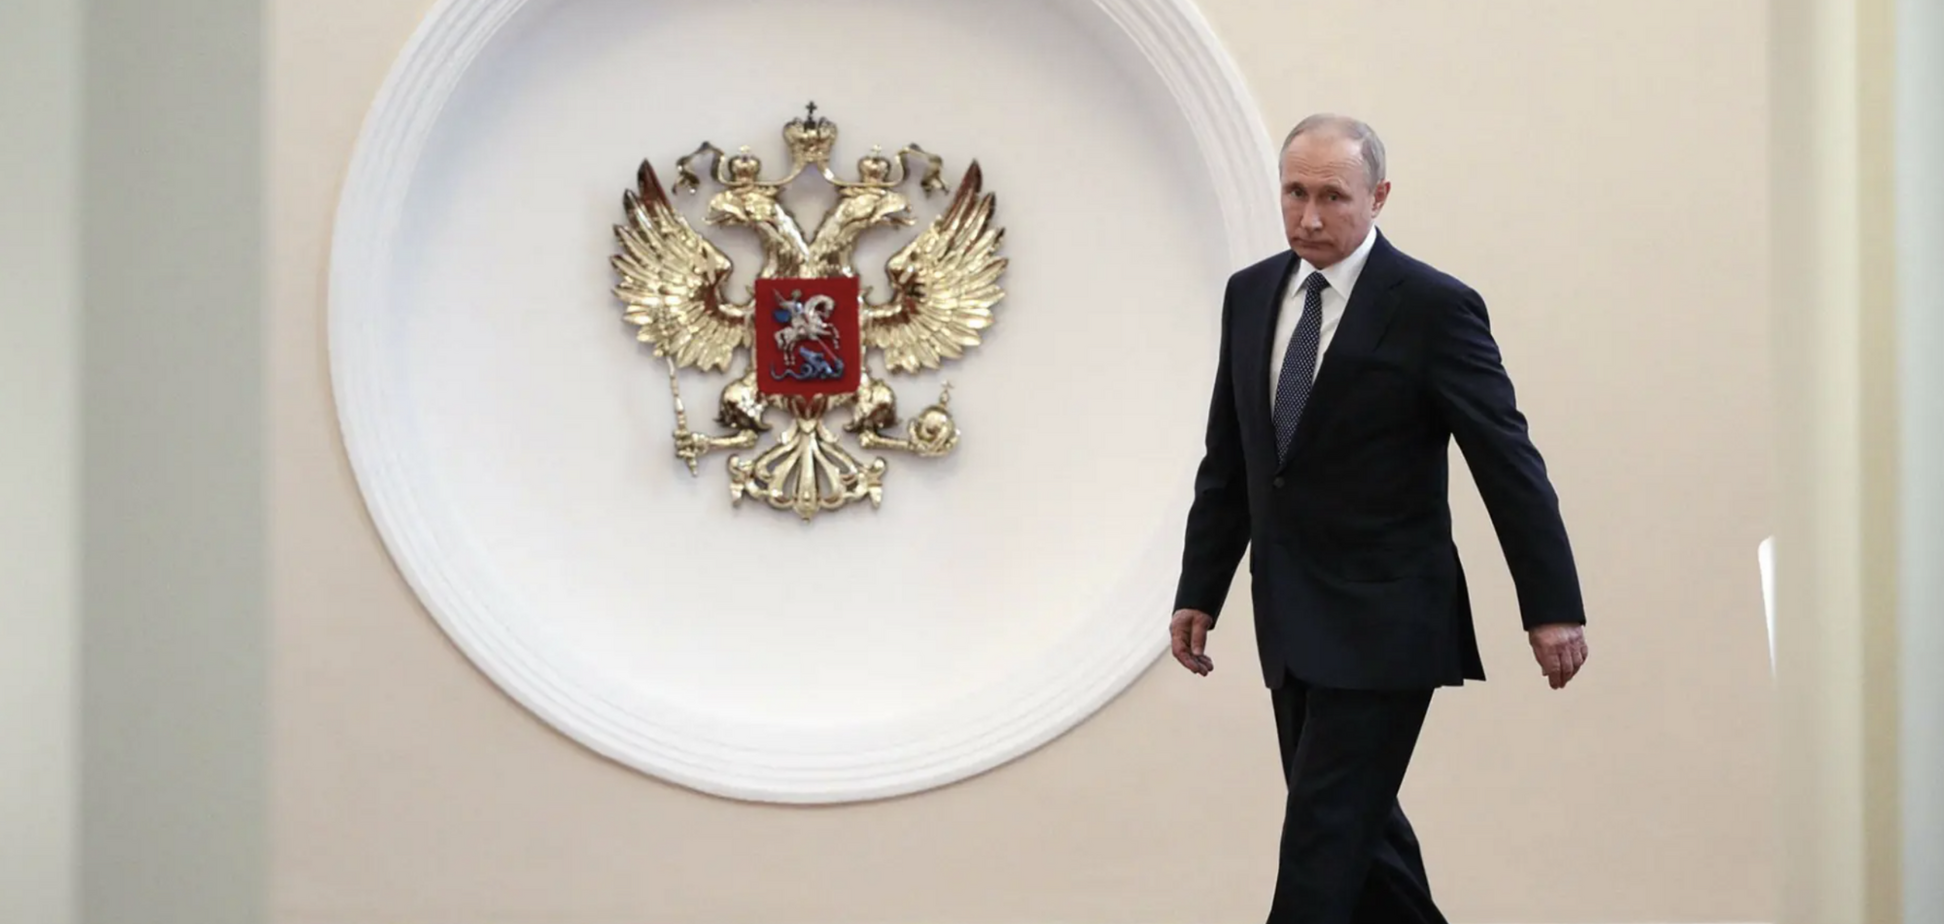 'Класичний дипломатичний ляпас': політичний експерт Кошель пояснив, чому лідери західних країн проігнорували 'інавгурацію' Путіна
